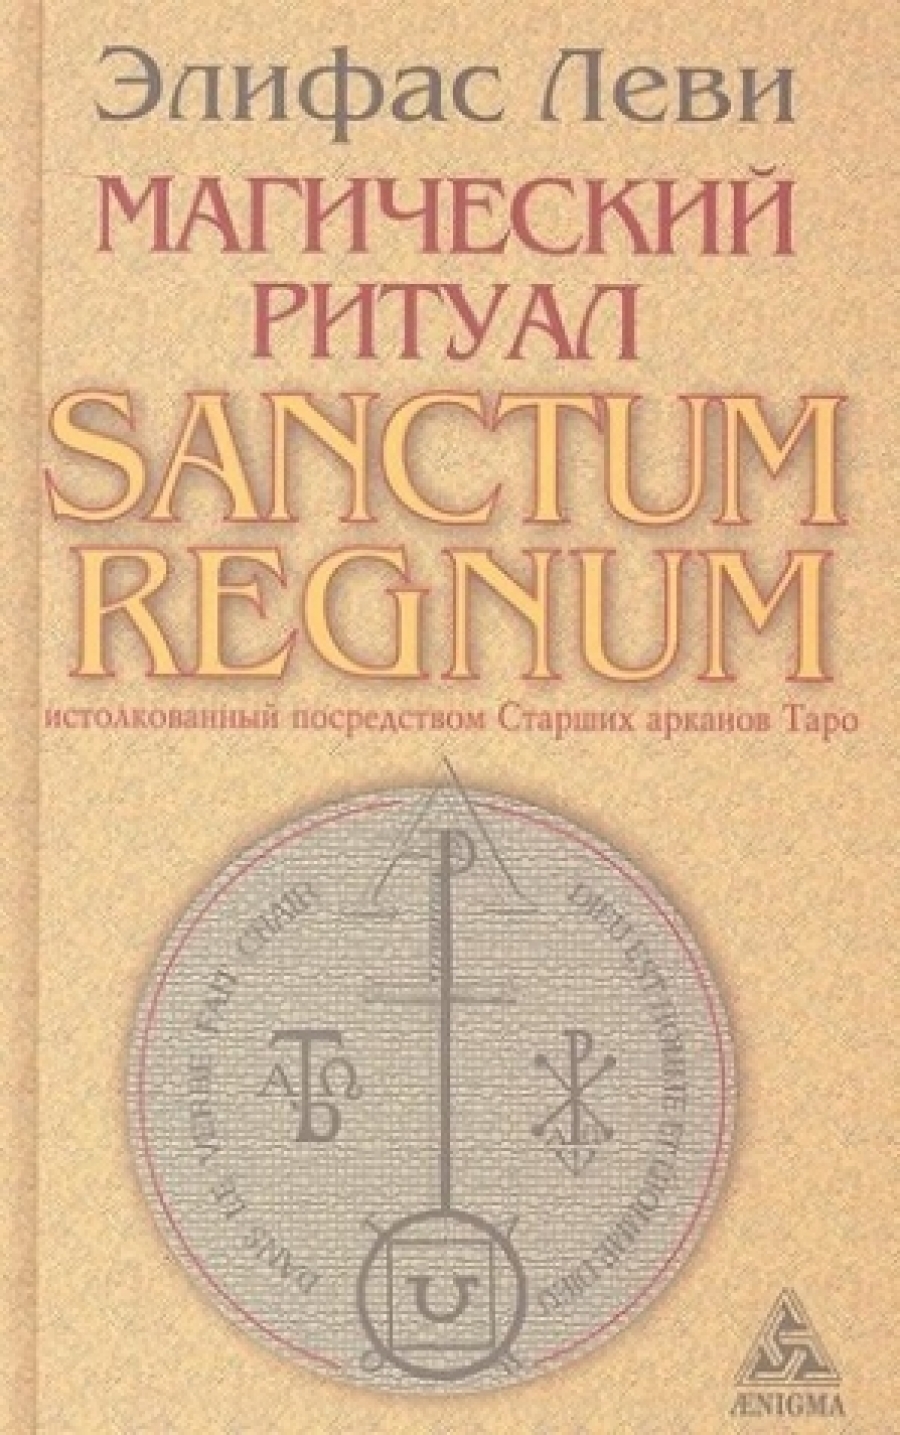 Леви Элифас Магический ритуал Sanctum Regnum, истолкованный посредством Старших арканов Таро 